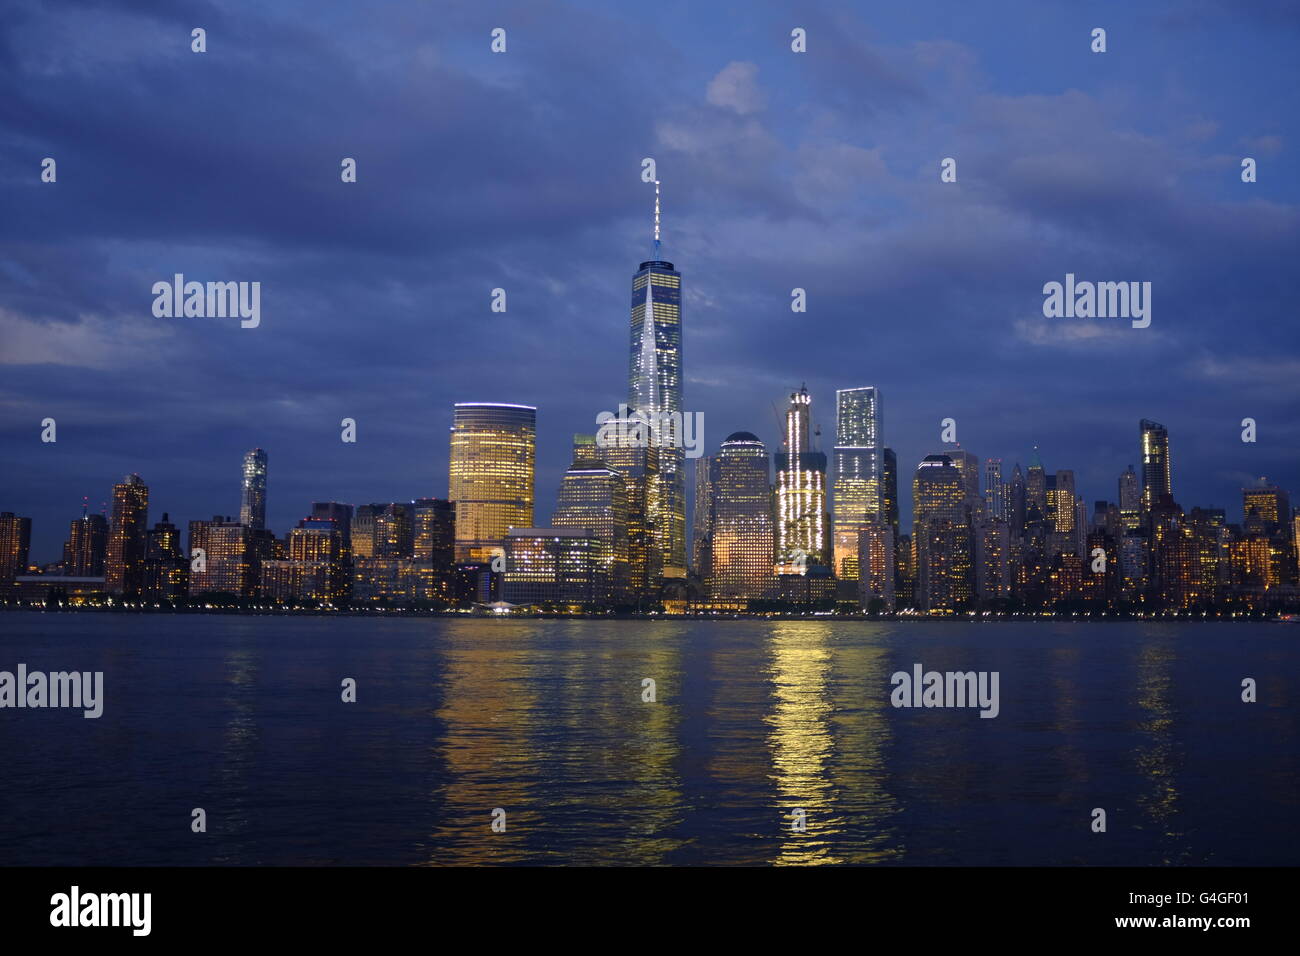 Lo skyline del centro cittadino inferiore di Manhattan, New York City, con quello nuovo World Trade Center dall'architetto David Childs. Foto Stock